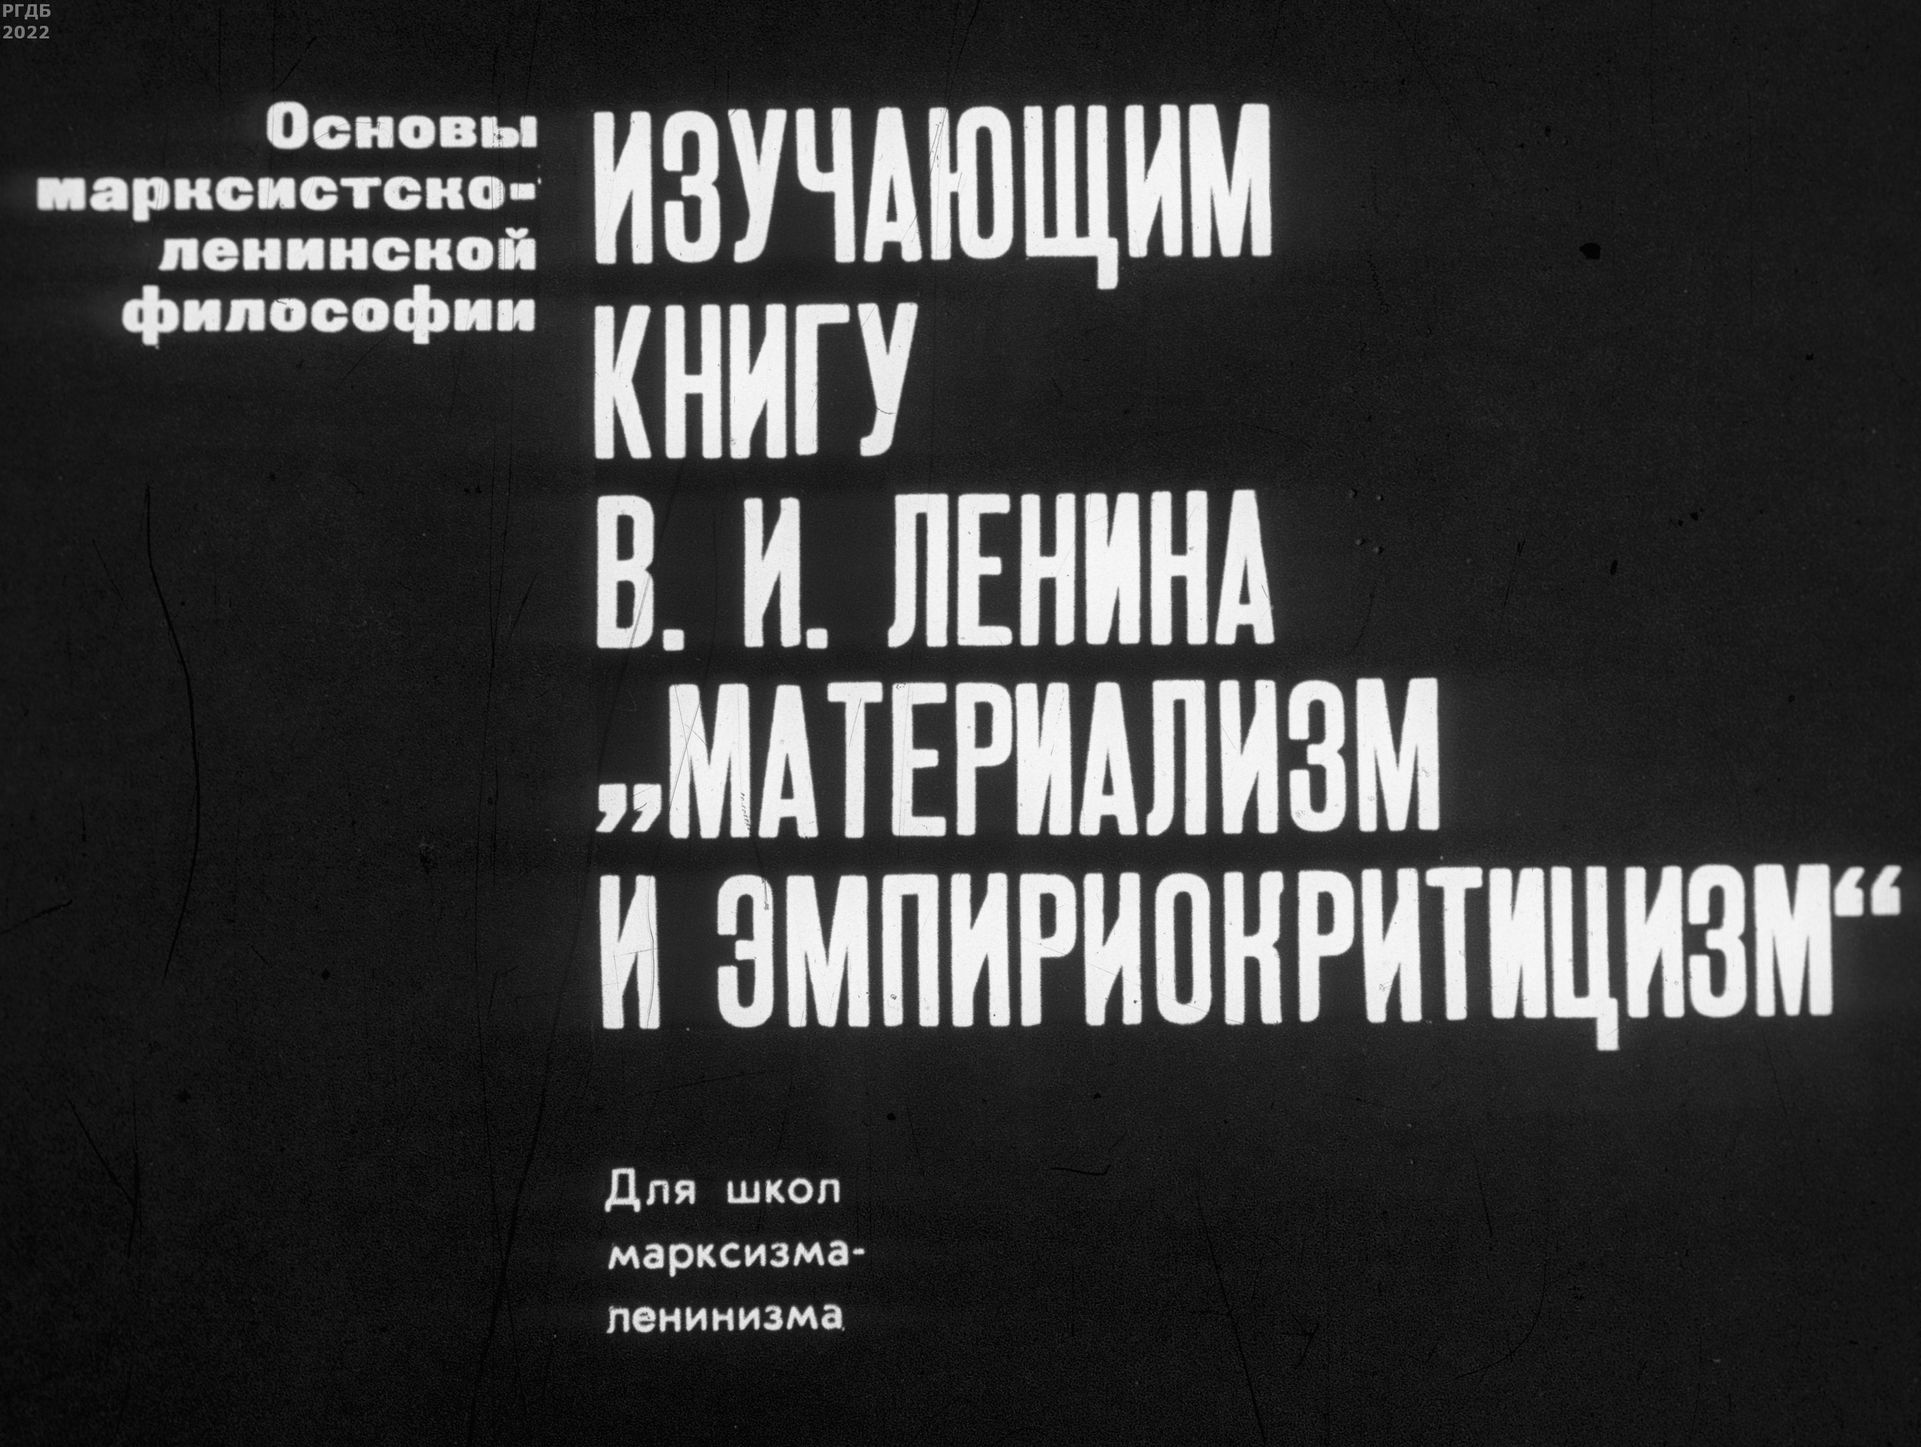 Изучающим книгу В.И. Ленина Материализм и эмпириокритицизм